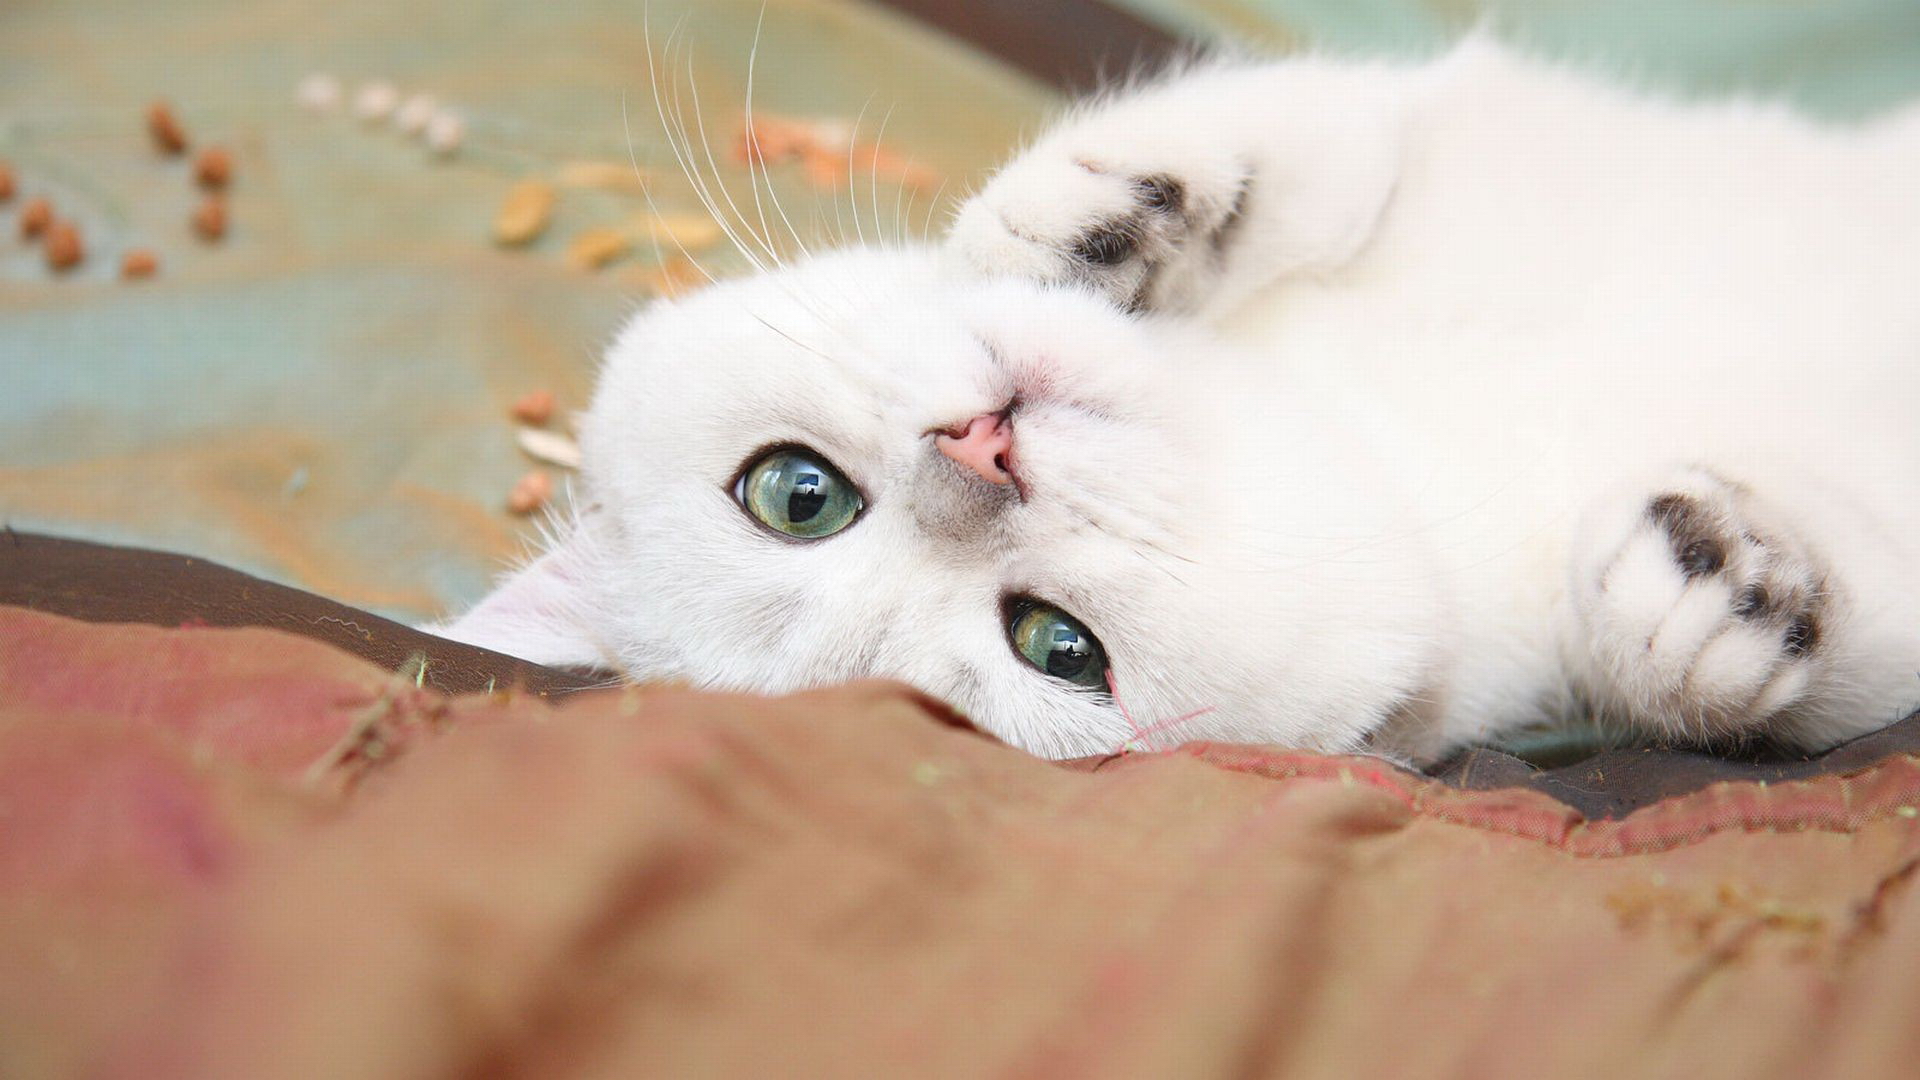  والپیپر زیبا از گربه با چشمان حیرت انگیز و فوق العاده